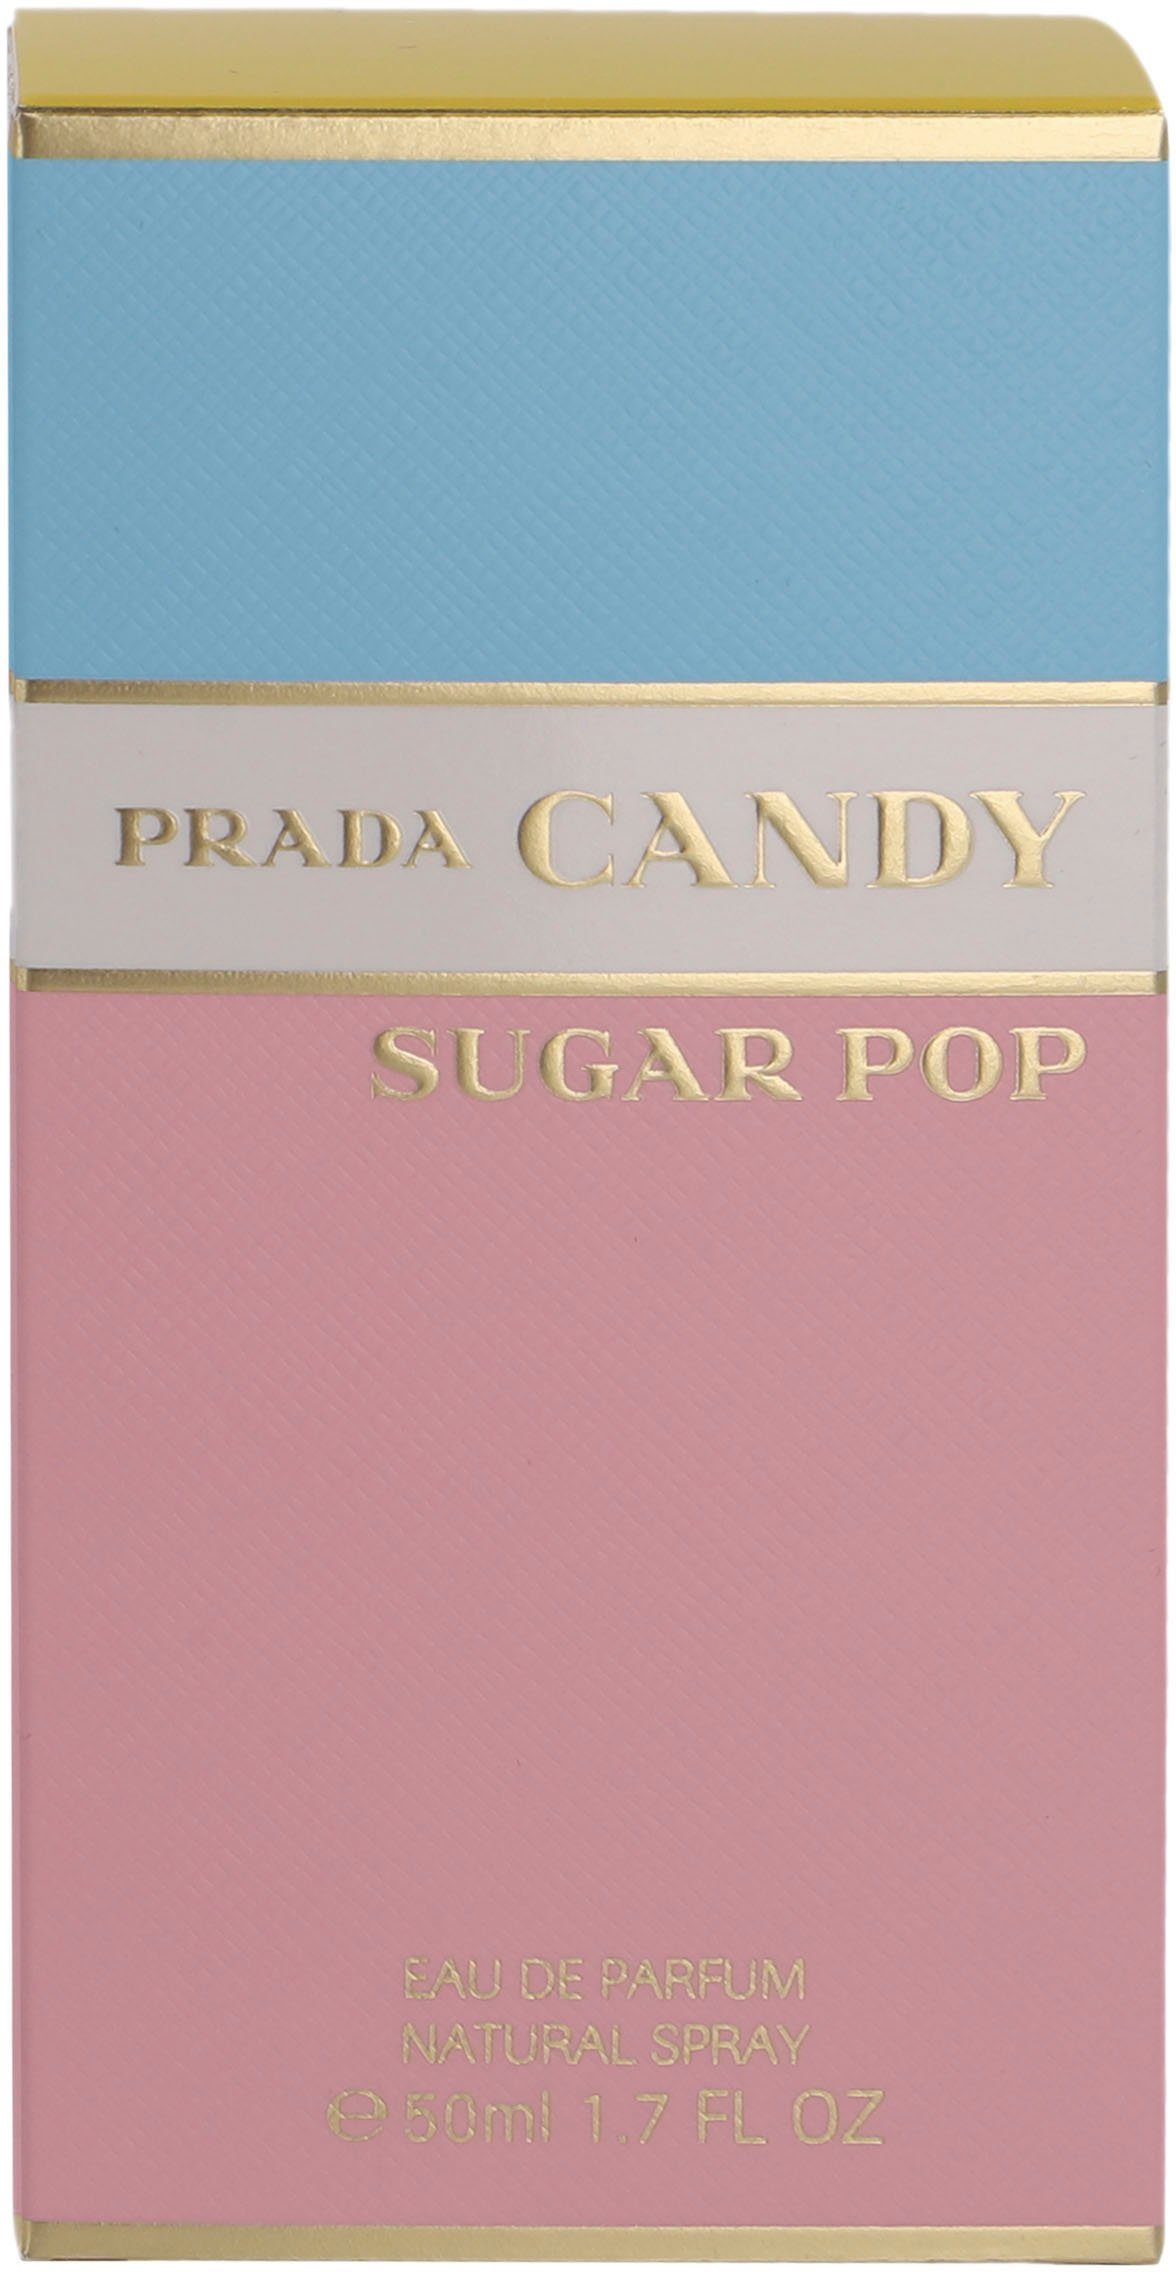 PRADA Eau de Parfum Candy Pop Sugar